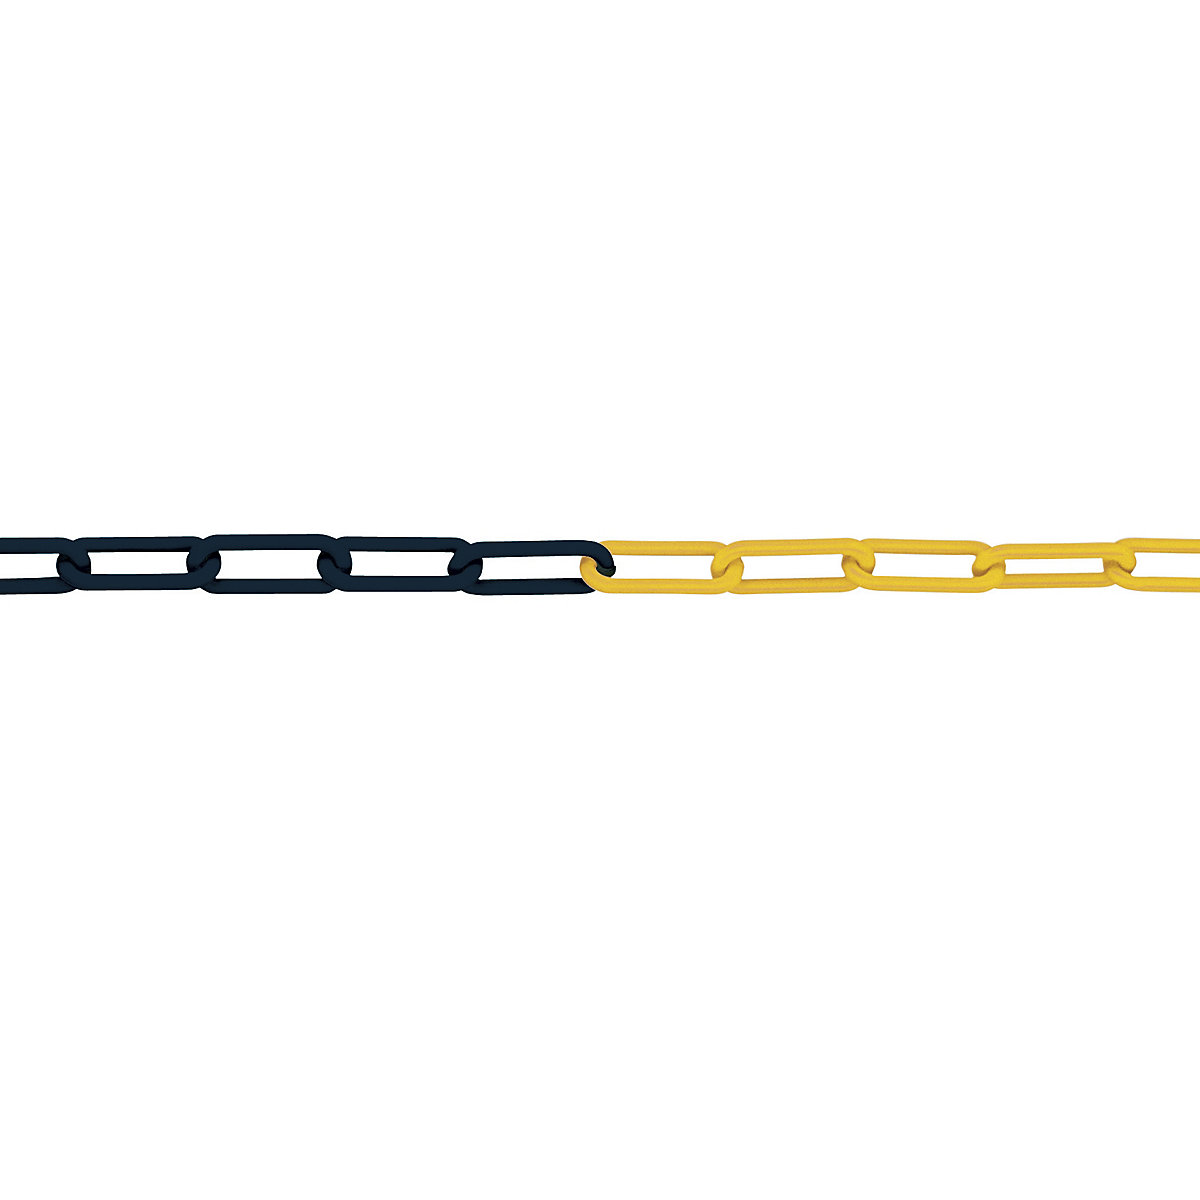 PE lanac s karikama, debljina karika 8 mm, dužina sklopa 25 m, u crno-žutoj boji, od 4 komada-1